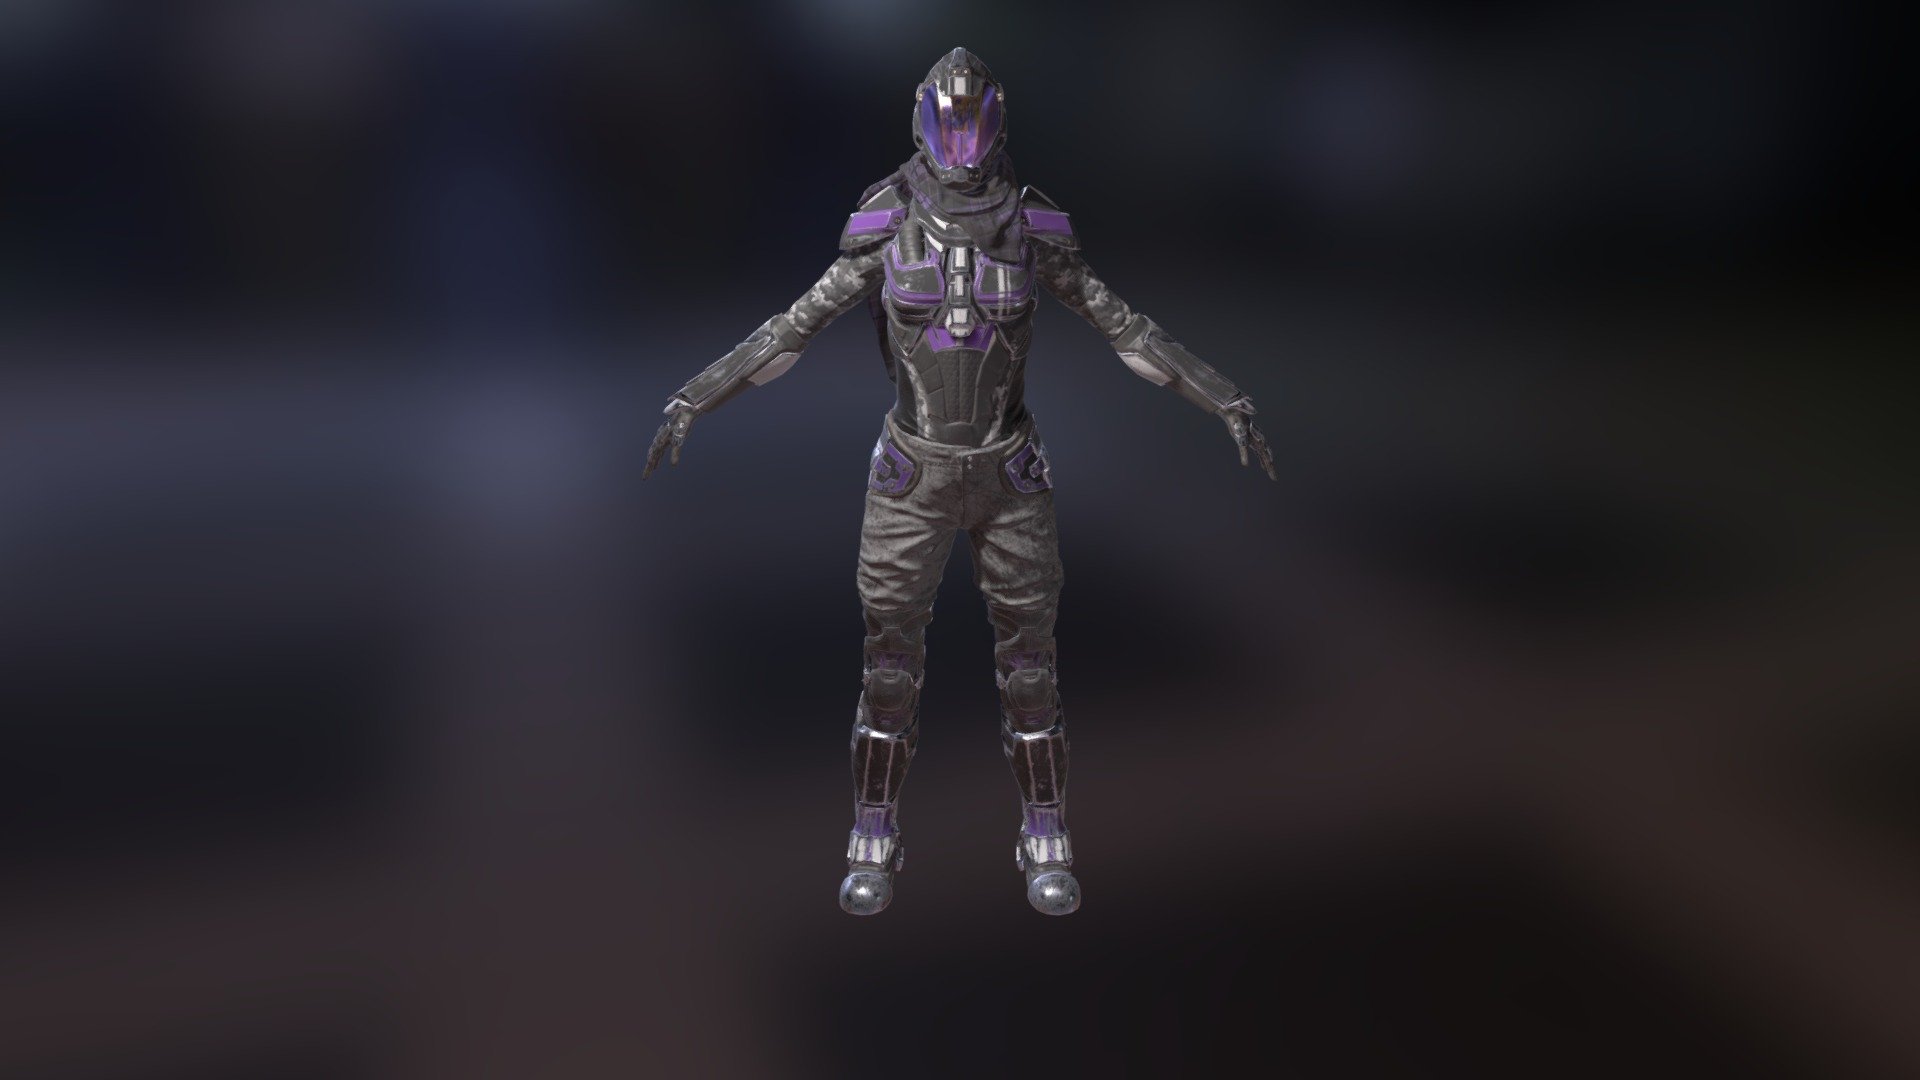 SciFi Female Armor - 3D model by arceyo 3d model